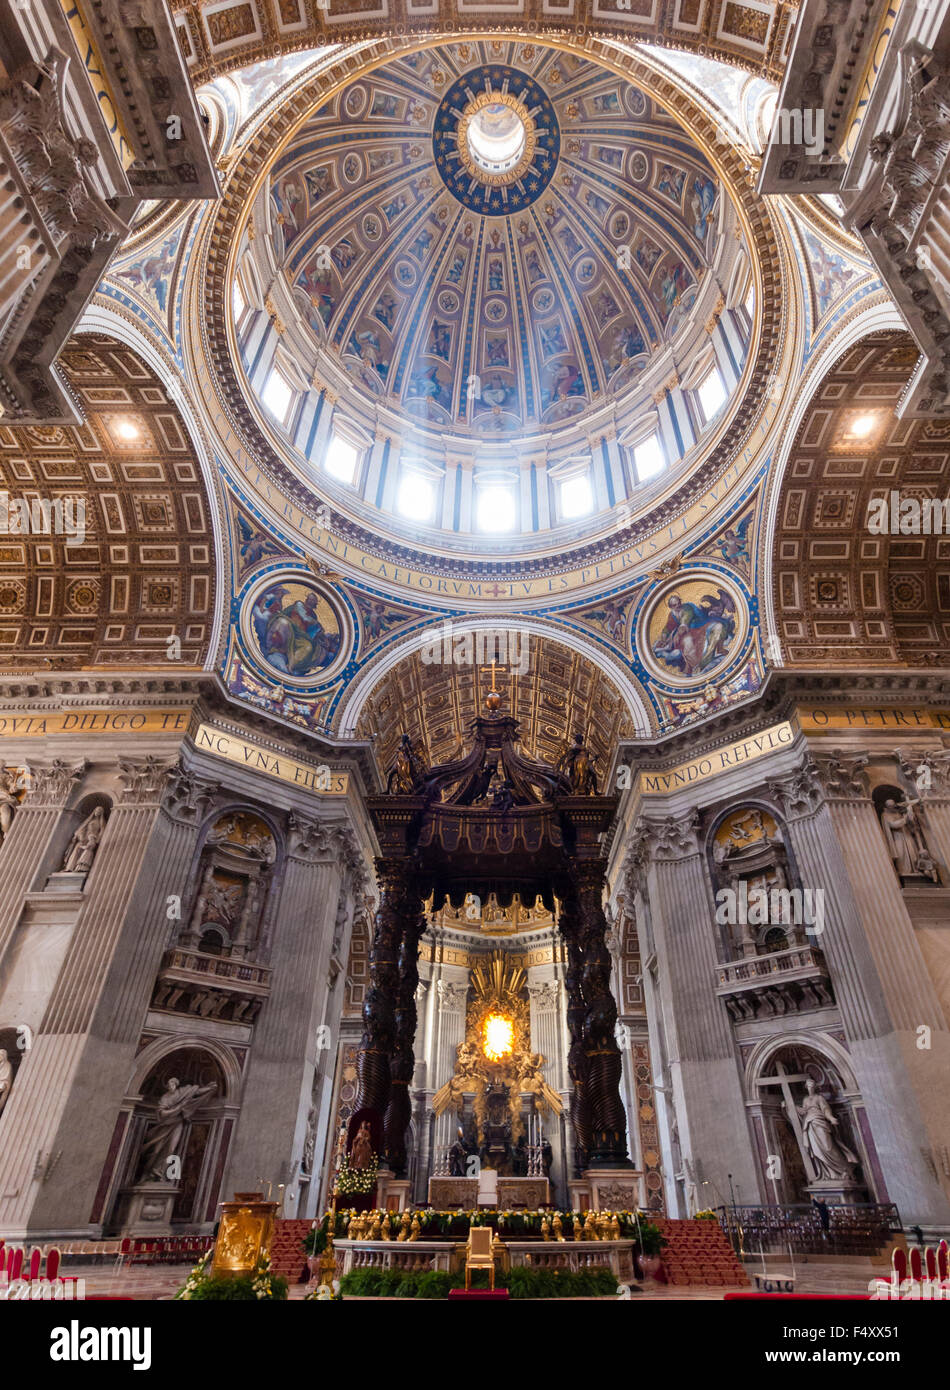 Intérieur de la Basilique Papale de Saint-Pierre, Vatican : choeur avec l'autel Bernini baldacchino sous la coupole principale. Banque D'Images